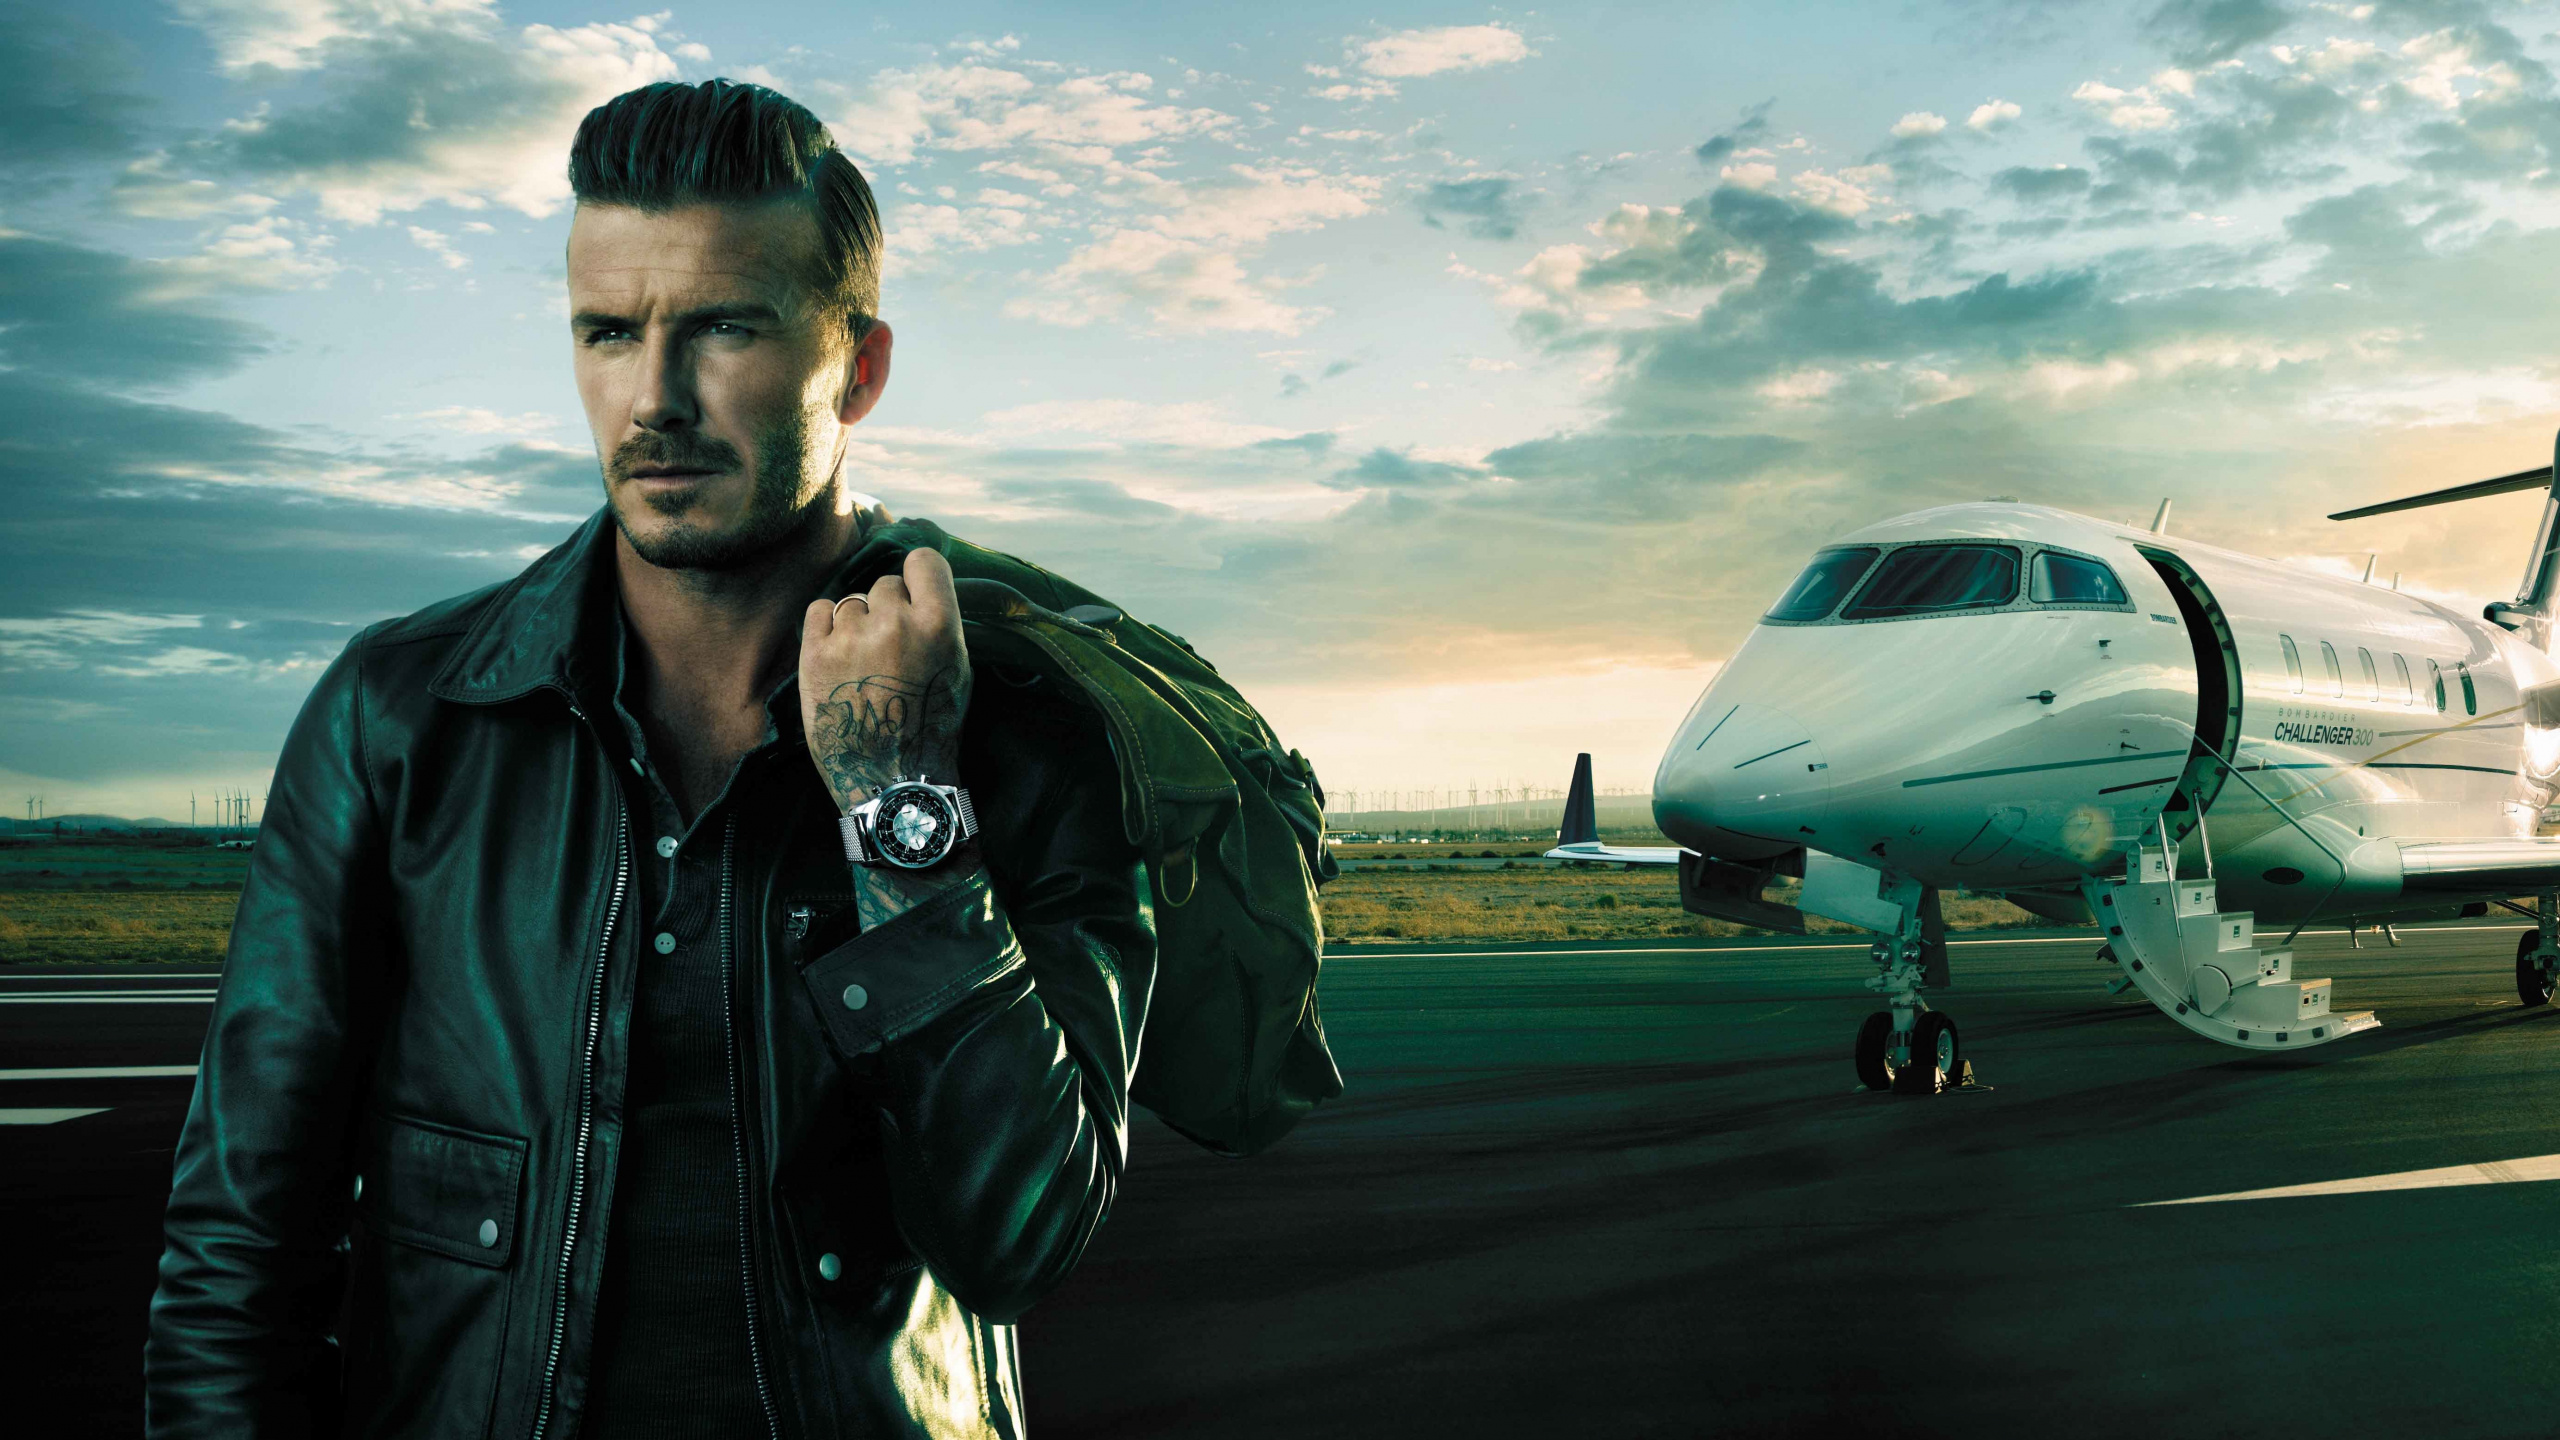 David Beckham, Breitling SA, Ingeniería Aeroespacial, Los Viajes Aéreos, Aeronave. Wallpaper in 2560x1440 Resolution